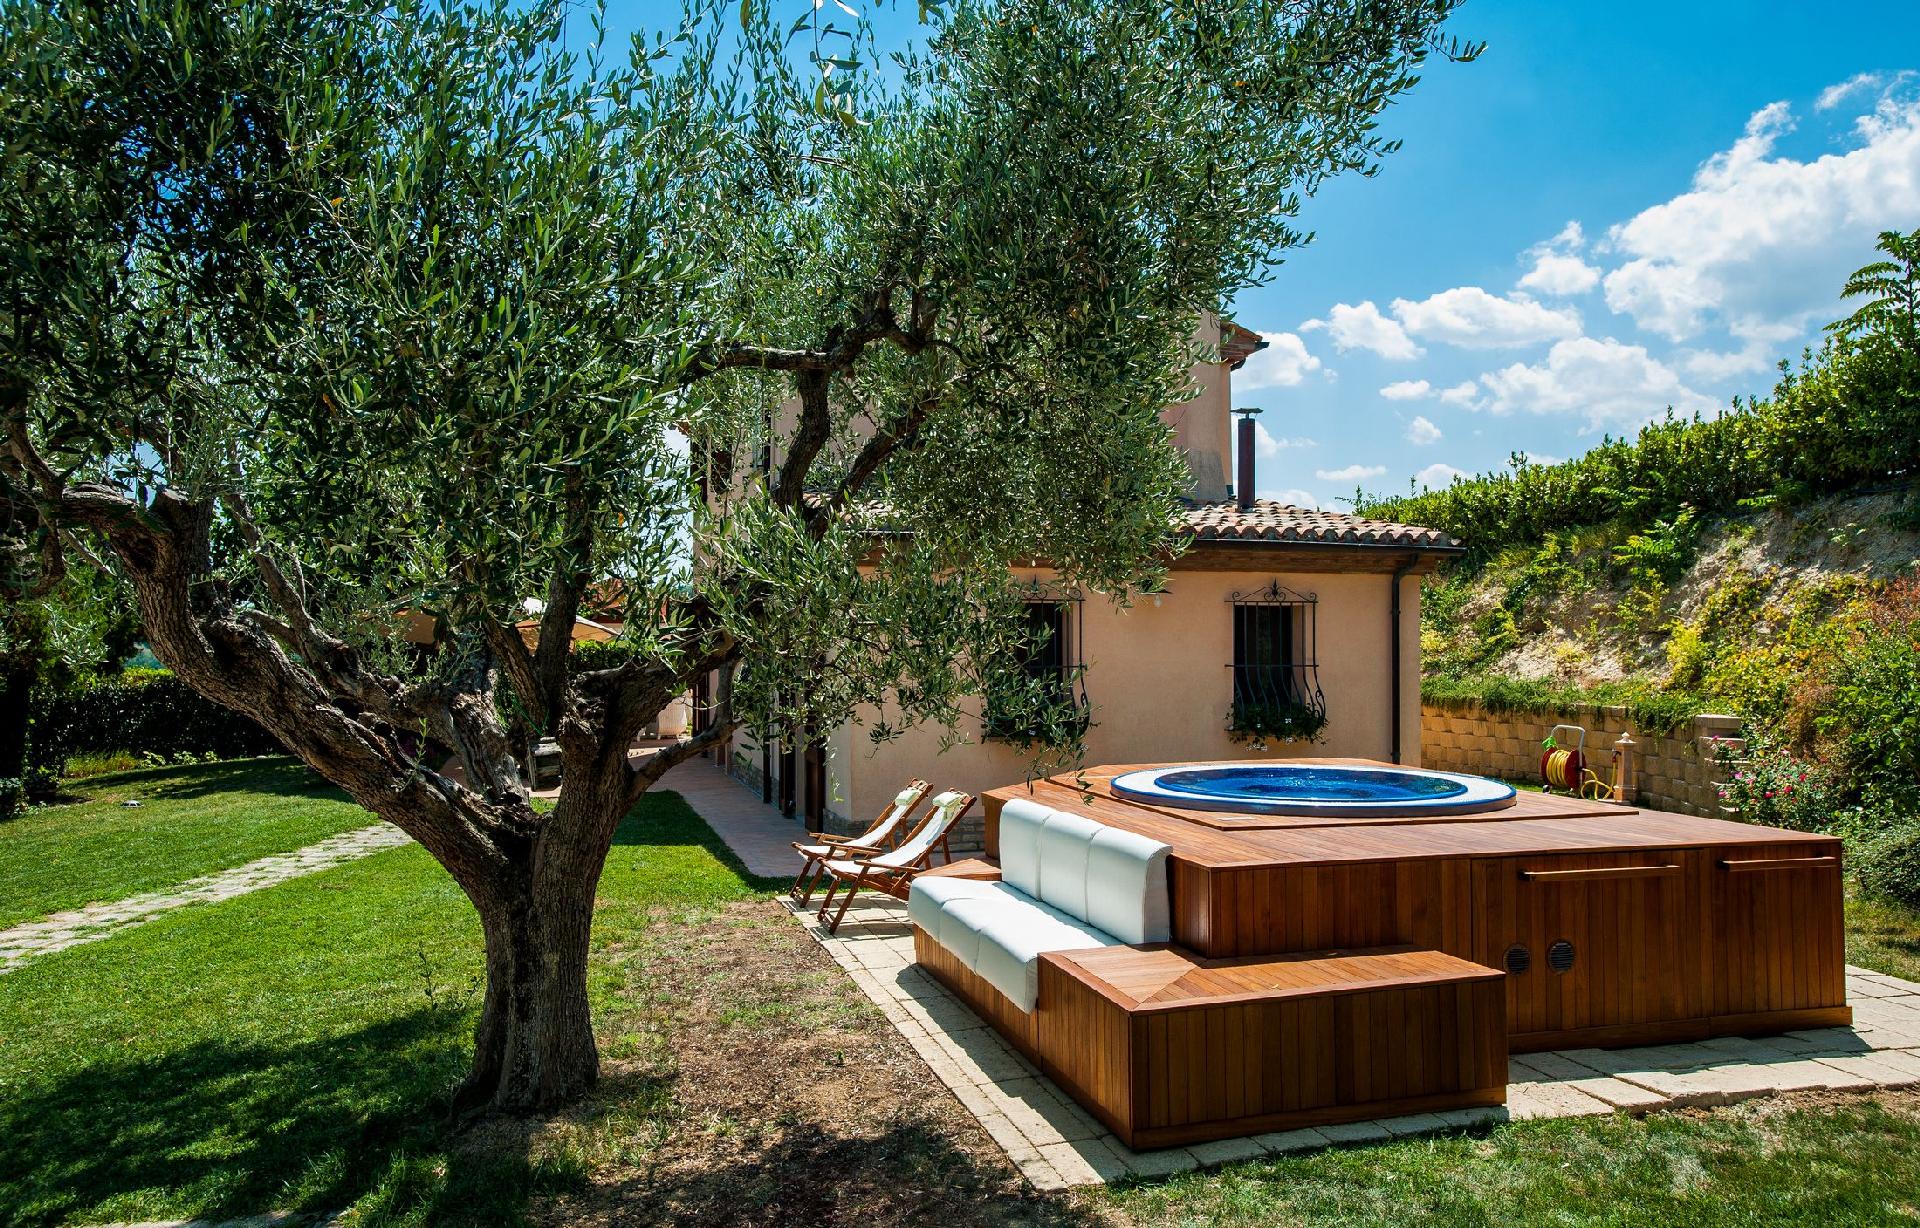 Ferienhaus mit Privatpool für 5 Personen  + 1 Ferienhaus in Italien